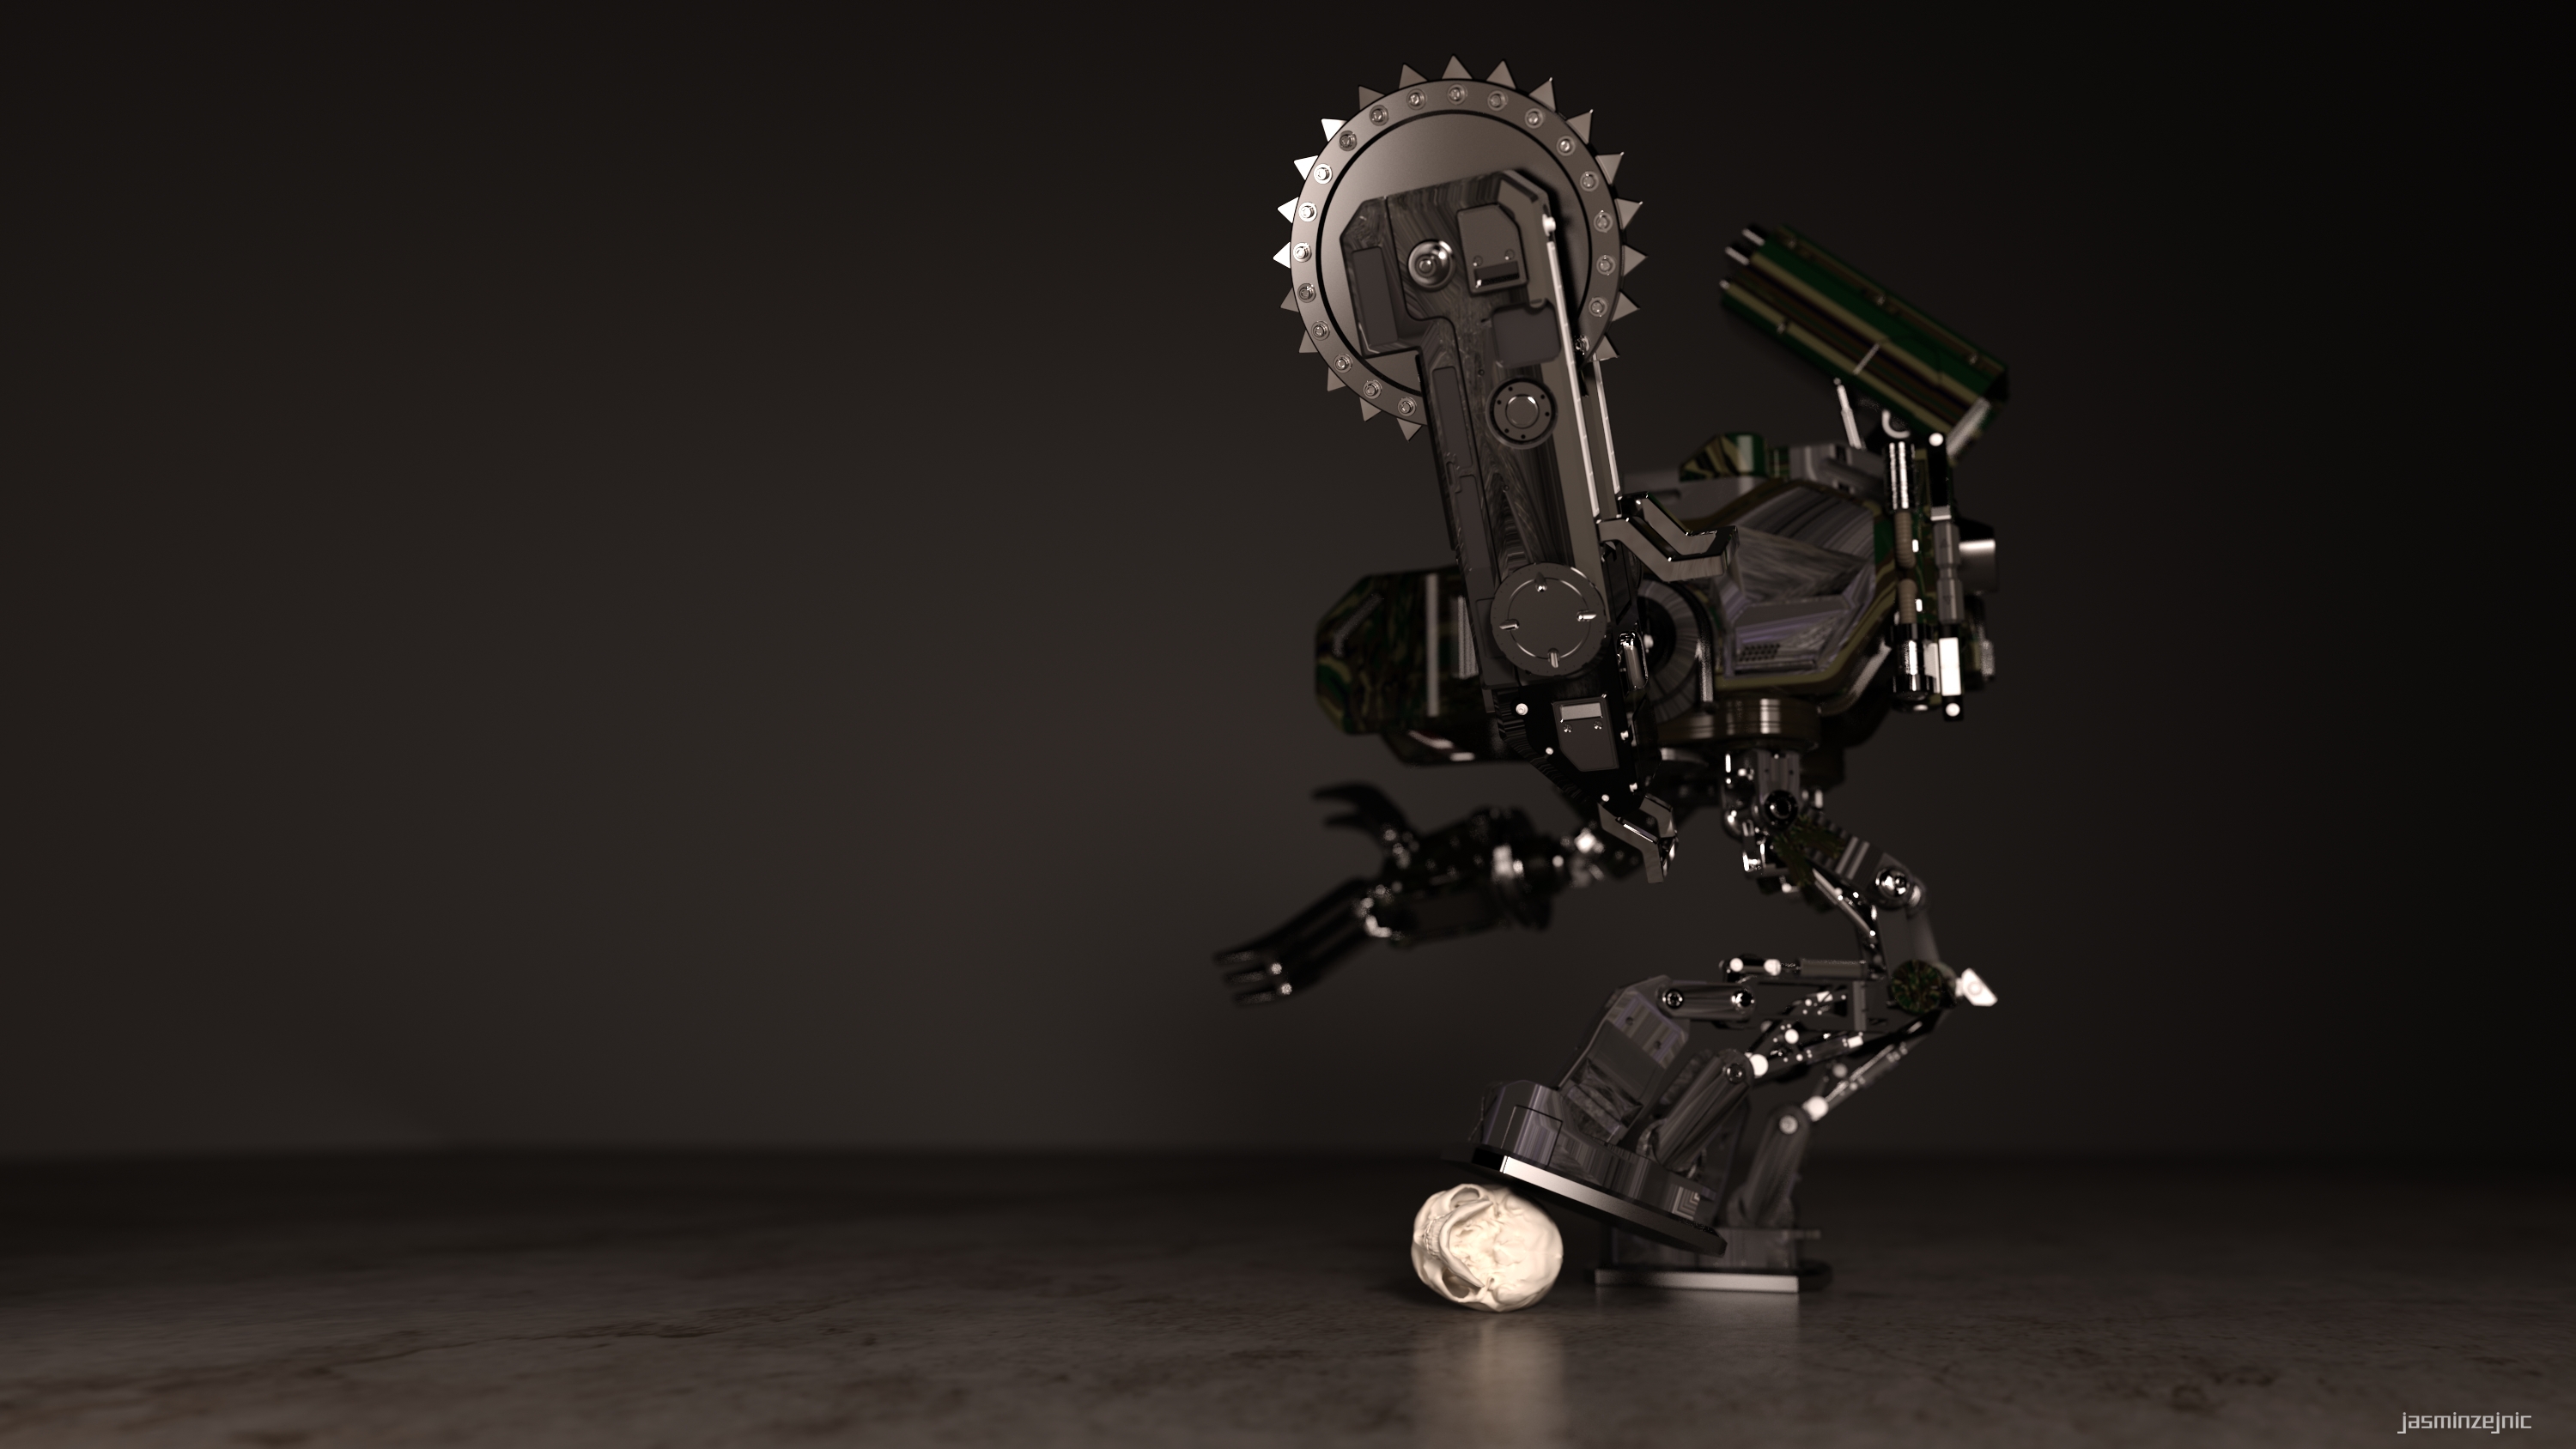 3d Cgi Digital Art High Tech Robot Sci Fi Skull 3000x1688